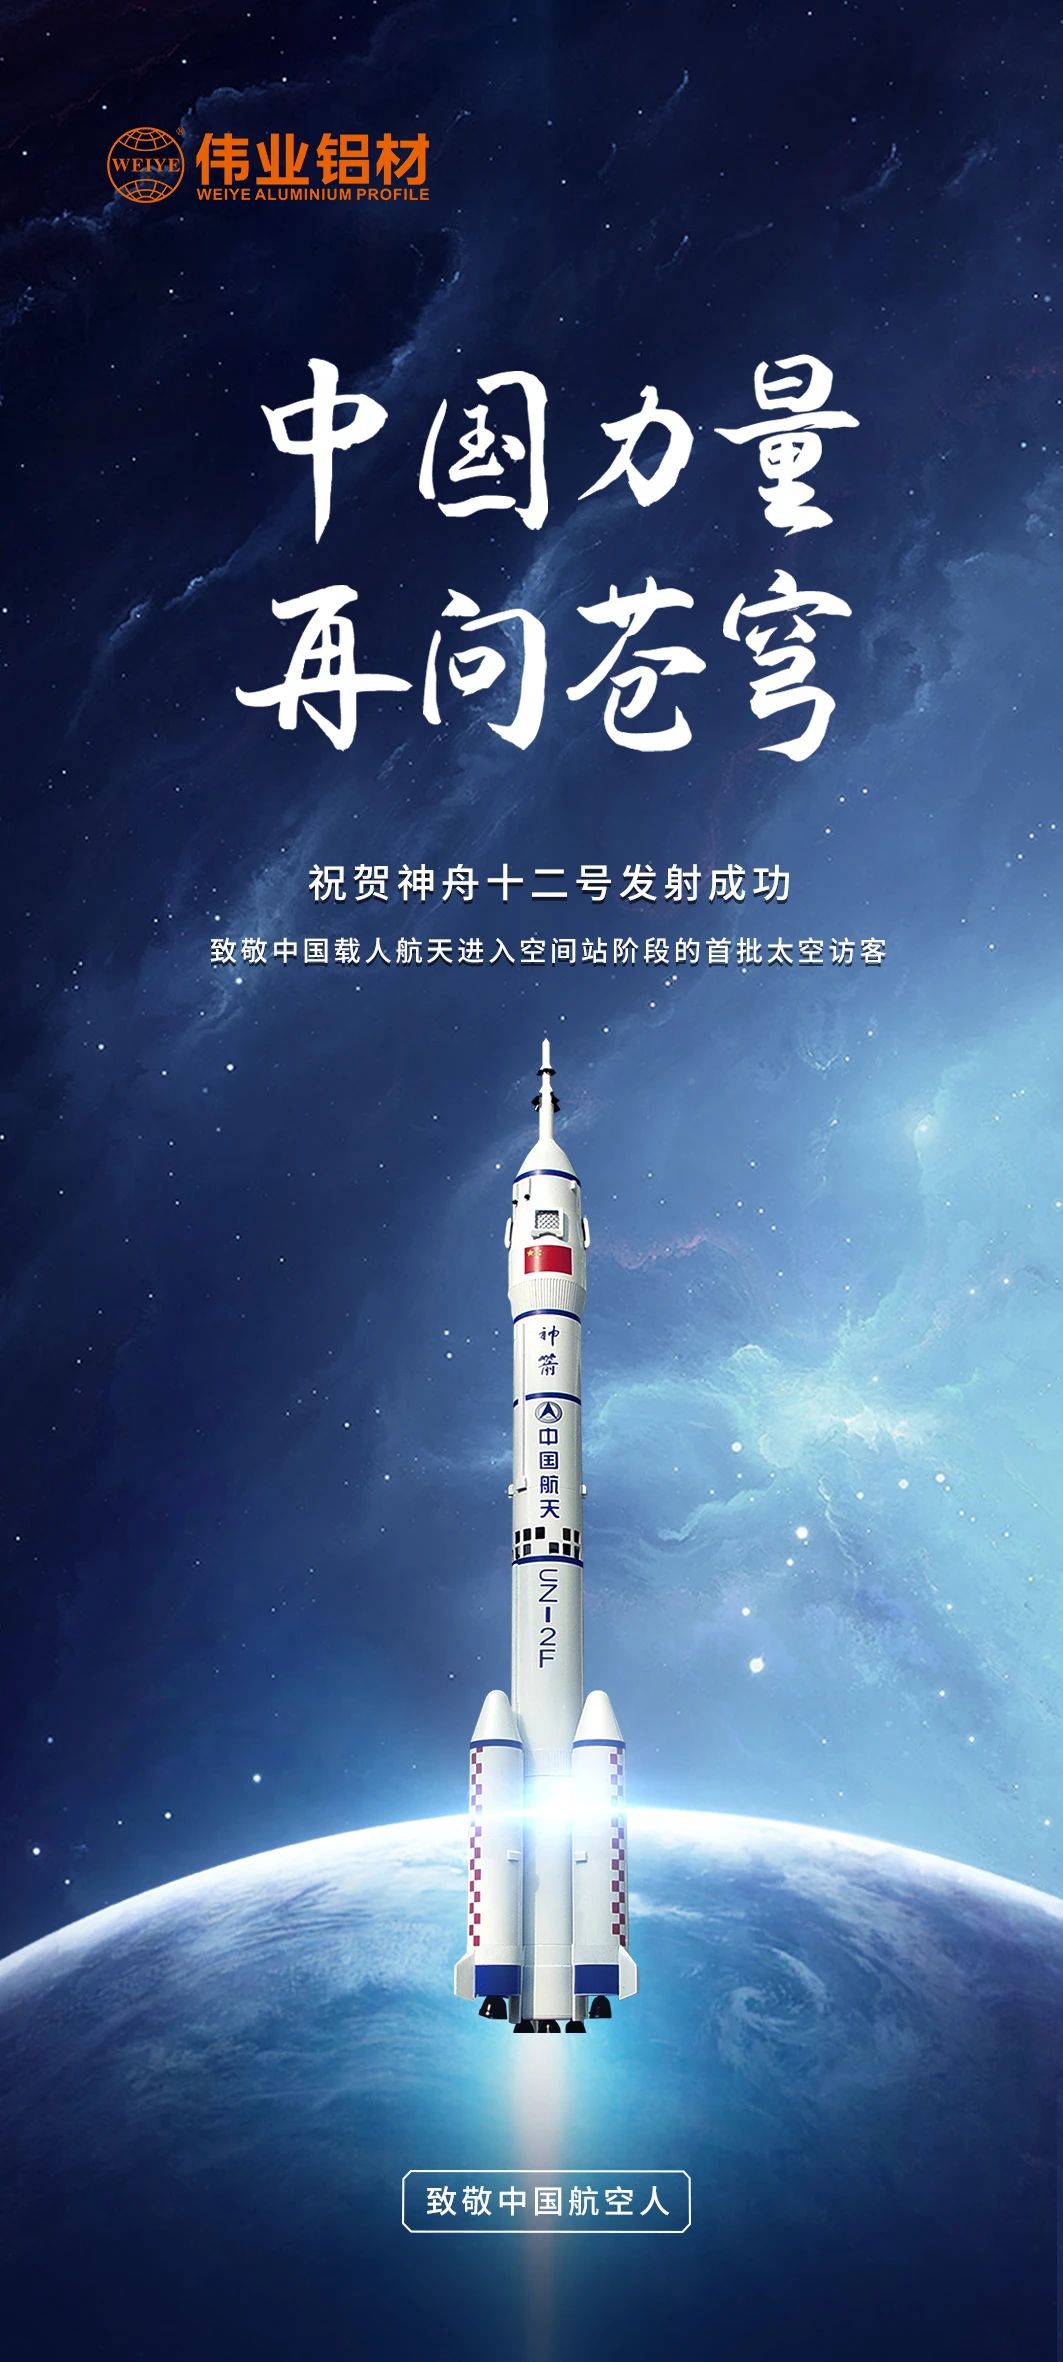 中国力量 再问苍穹 | 伟业铝材祝贺神舟十二号发射成功！期待英雄航天人归来！